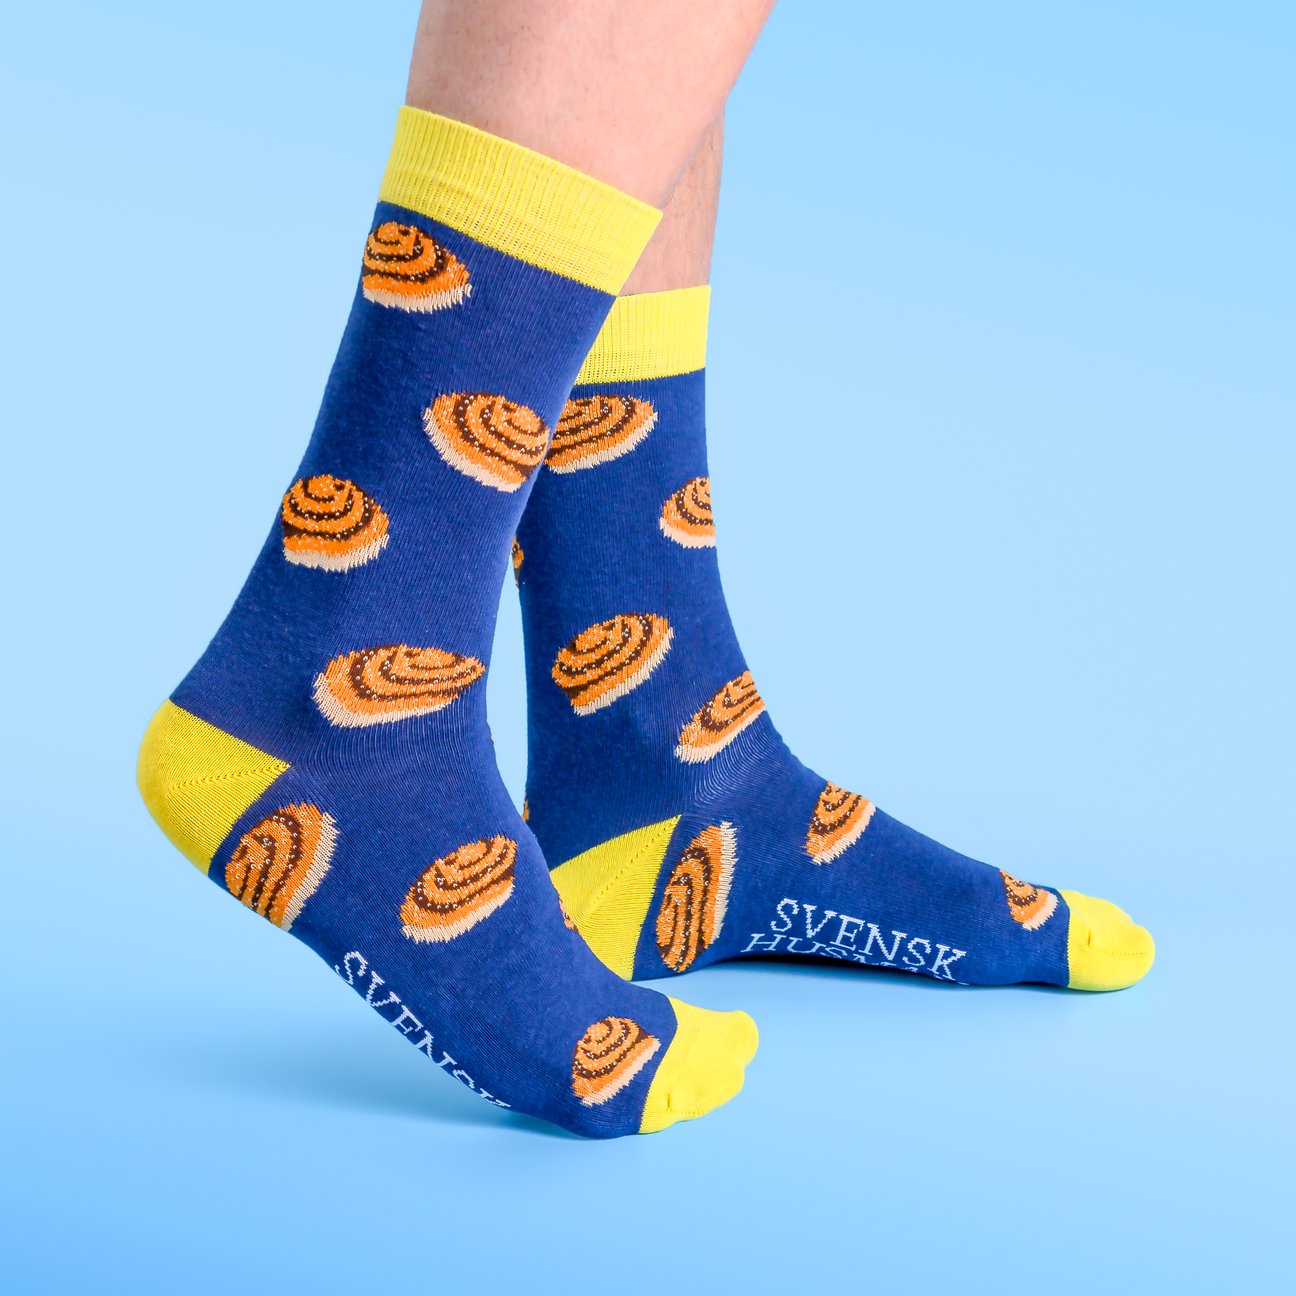 Kanelbullen Cinnamon Bun Socks size 36 - 40